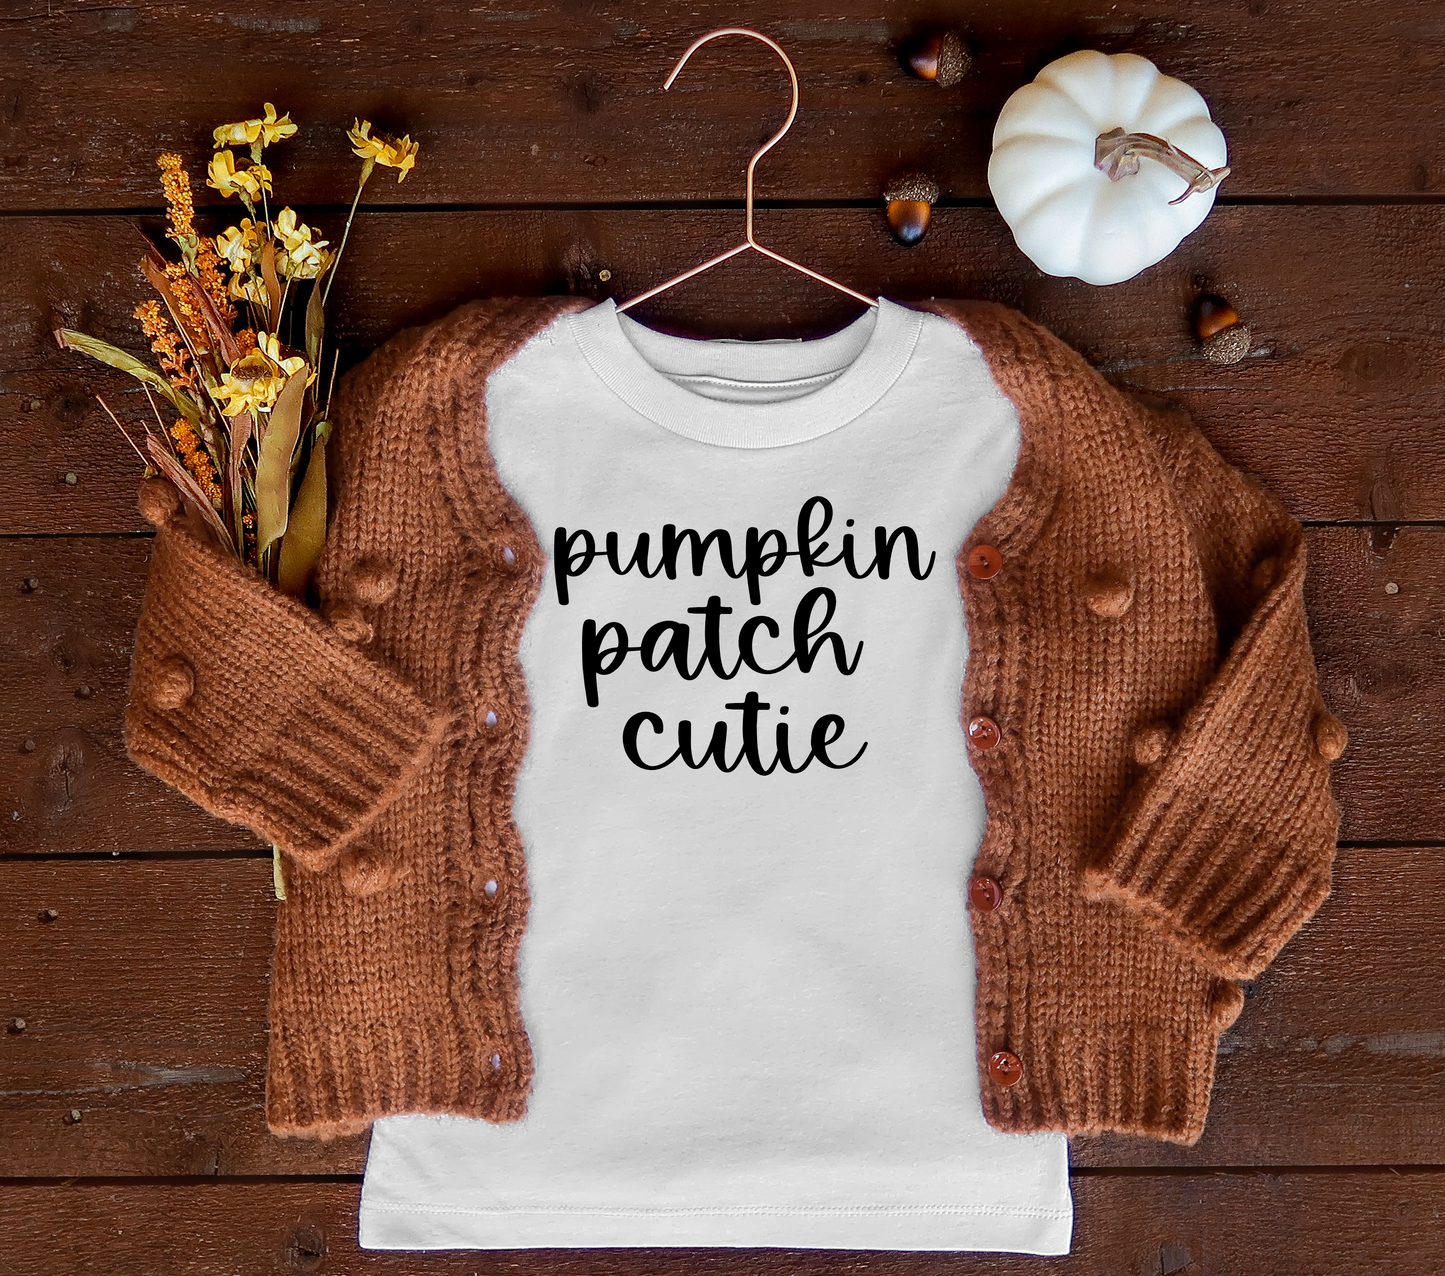 Pumpkin patch cutie